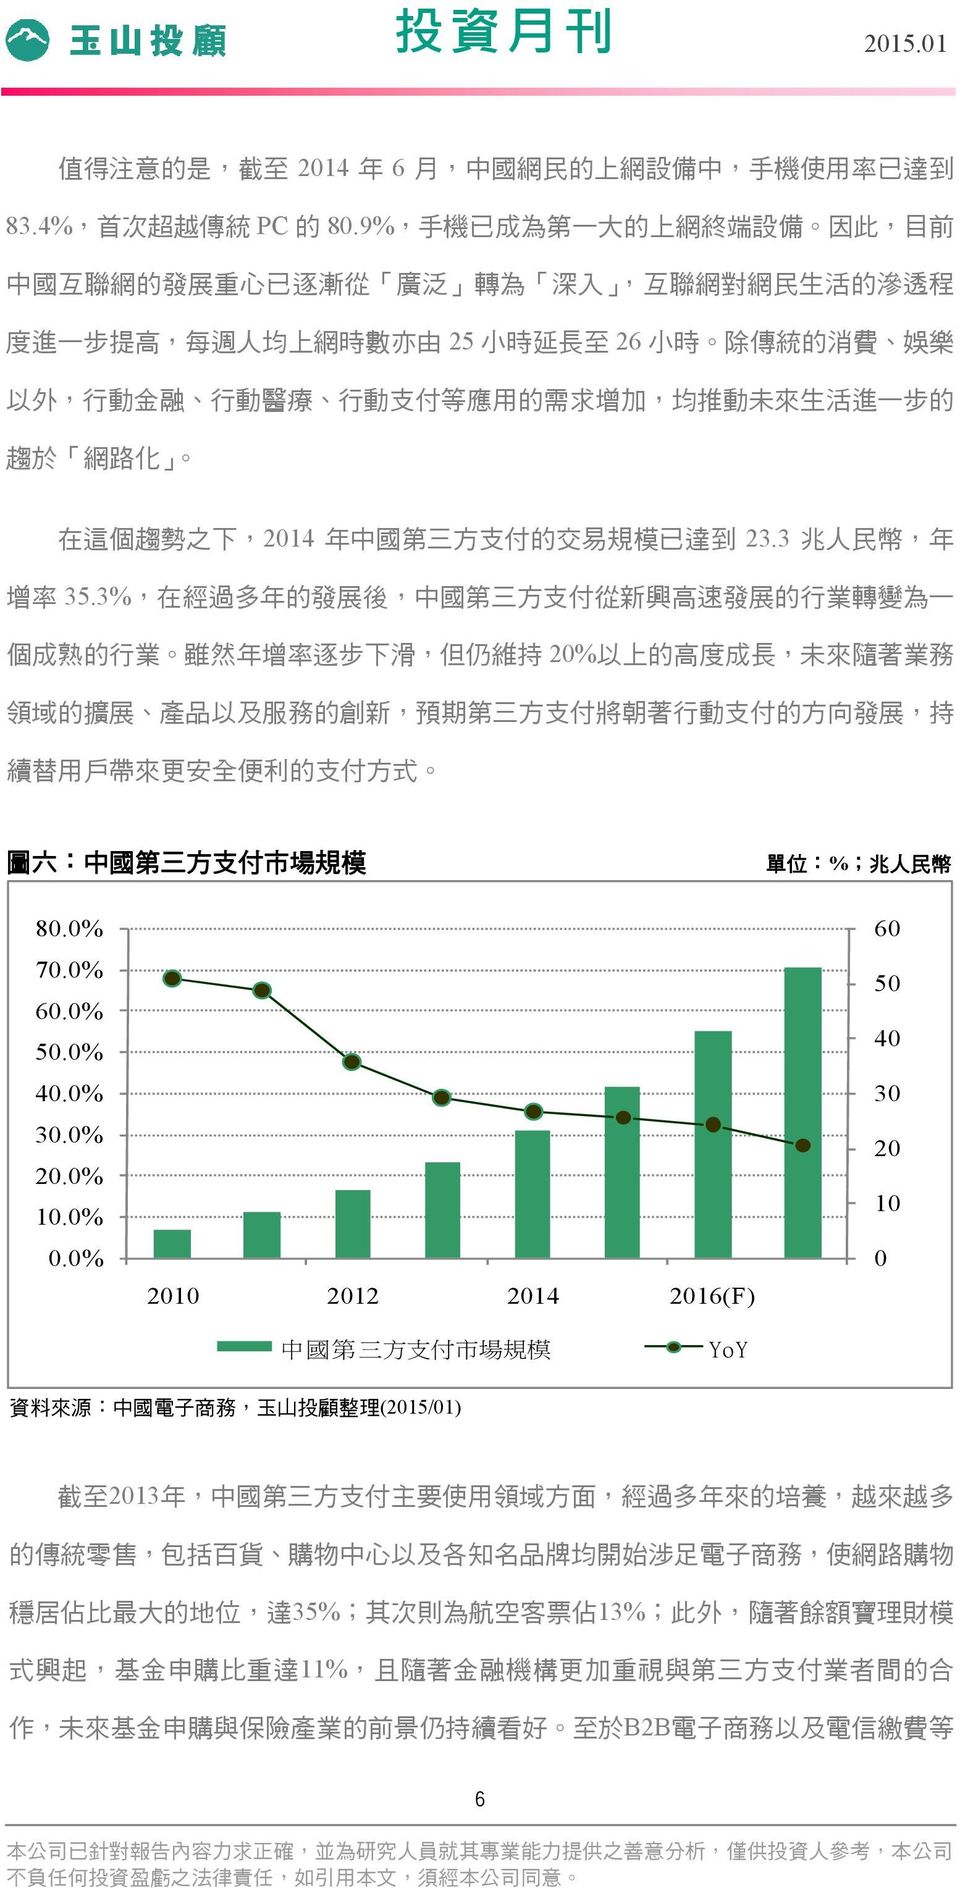 動 支 付 等 應 用 的 需 求 增 加, 均 推 動 未 來 生 活 進 一 步 的 趨 於 網 路 化 在 這 個 趨 勢 之 下,2014 年 中 國 第 三 方 支 付 的 交 易 規 模 已 達 到 23.3 兆 人 民 幣, 年 增 率 35.